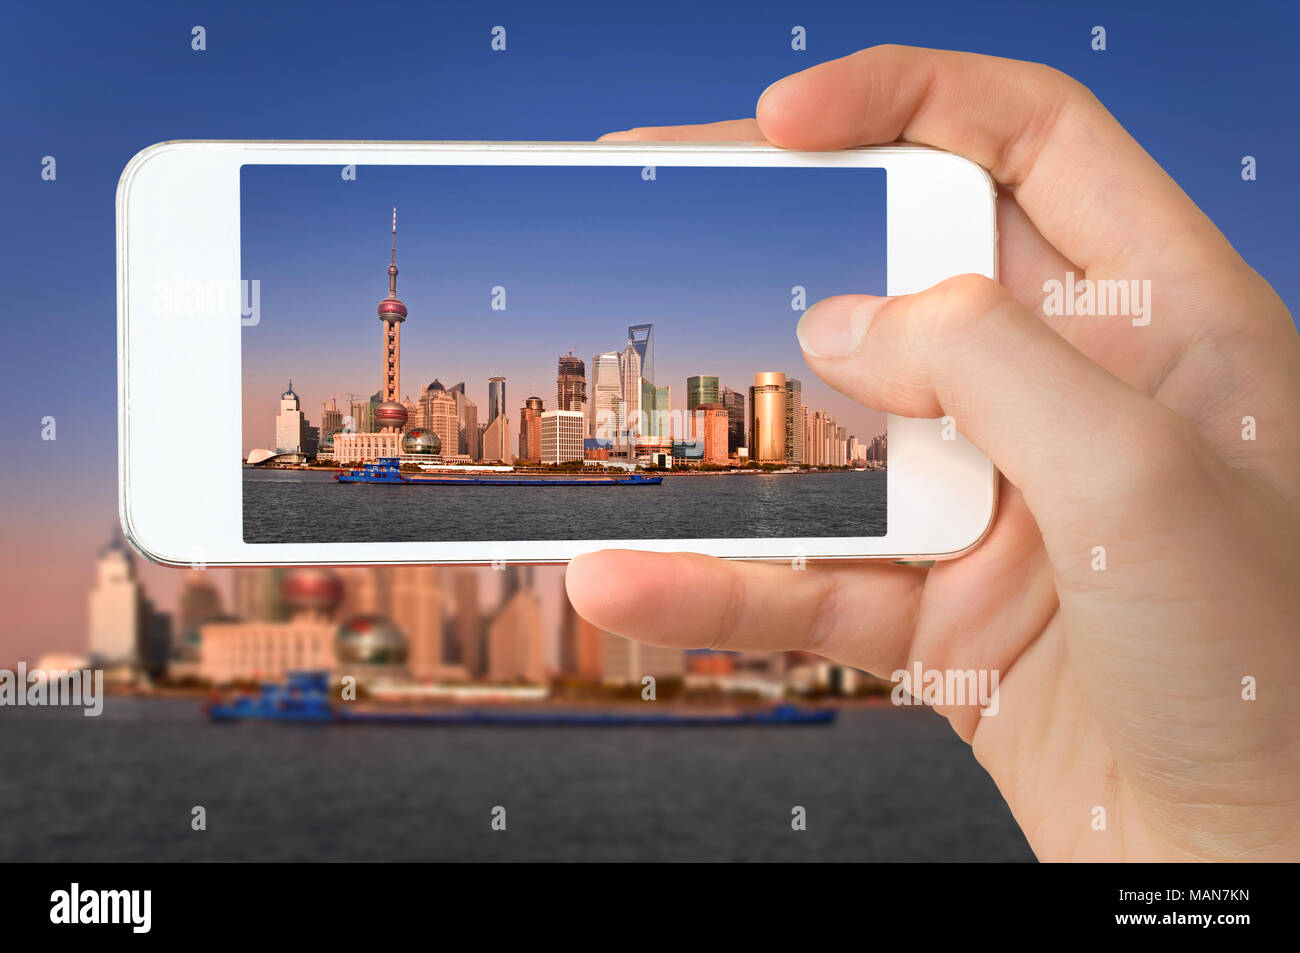 Libre d'une part avec le smartphone de prendre une photo des toits de Shanghai et la rivière Huangpu, Chine Banque D'Images